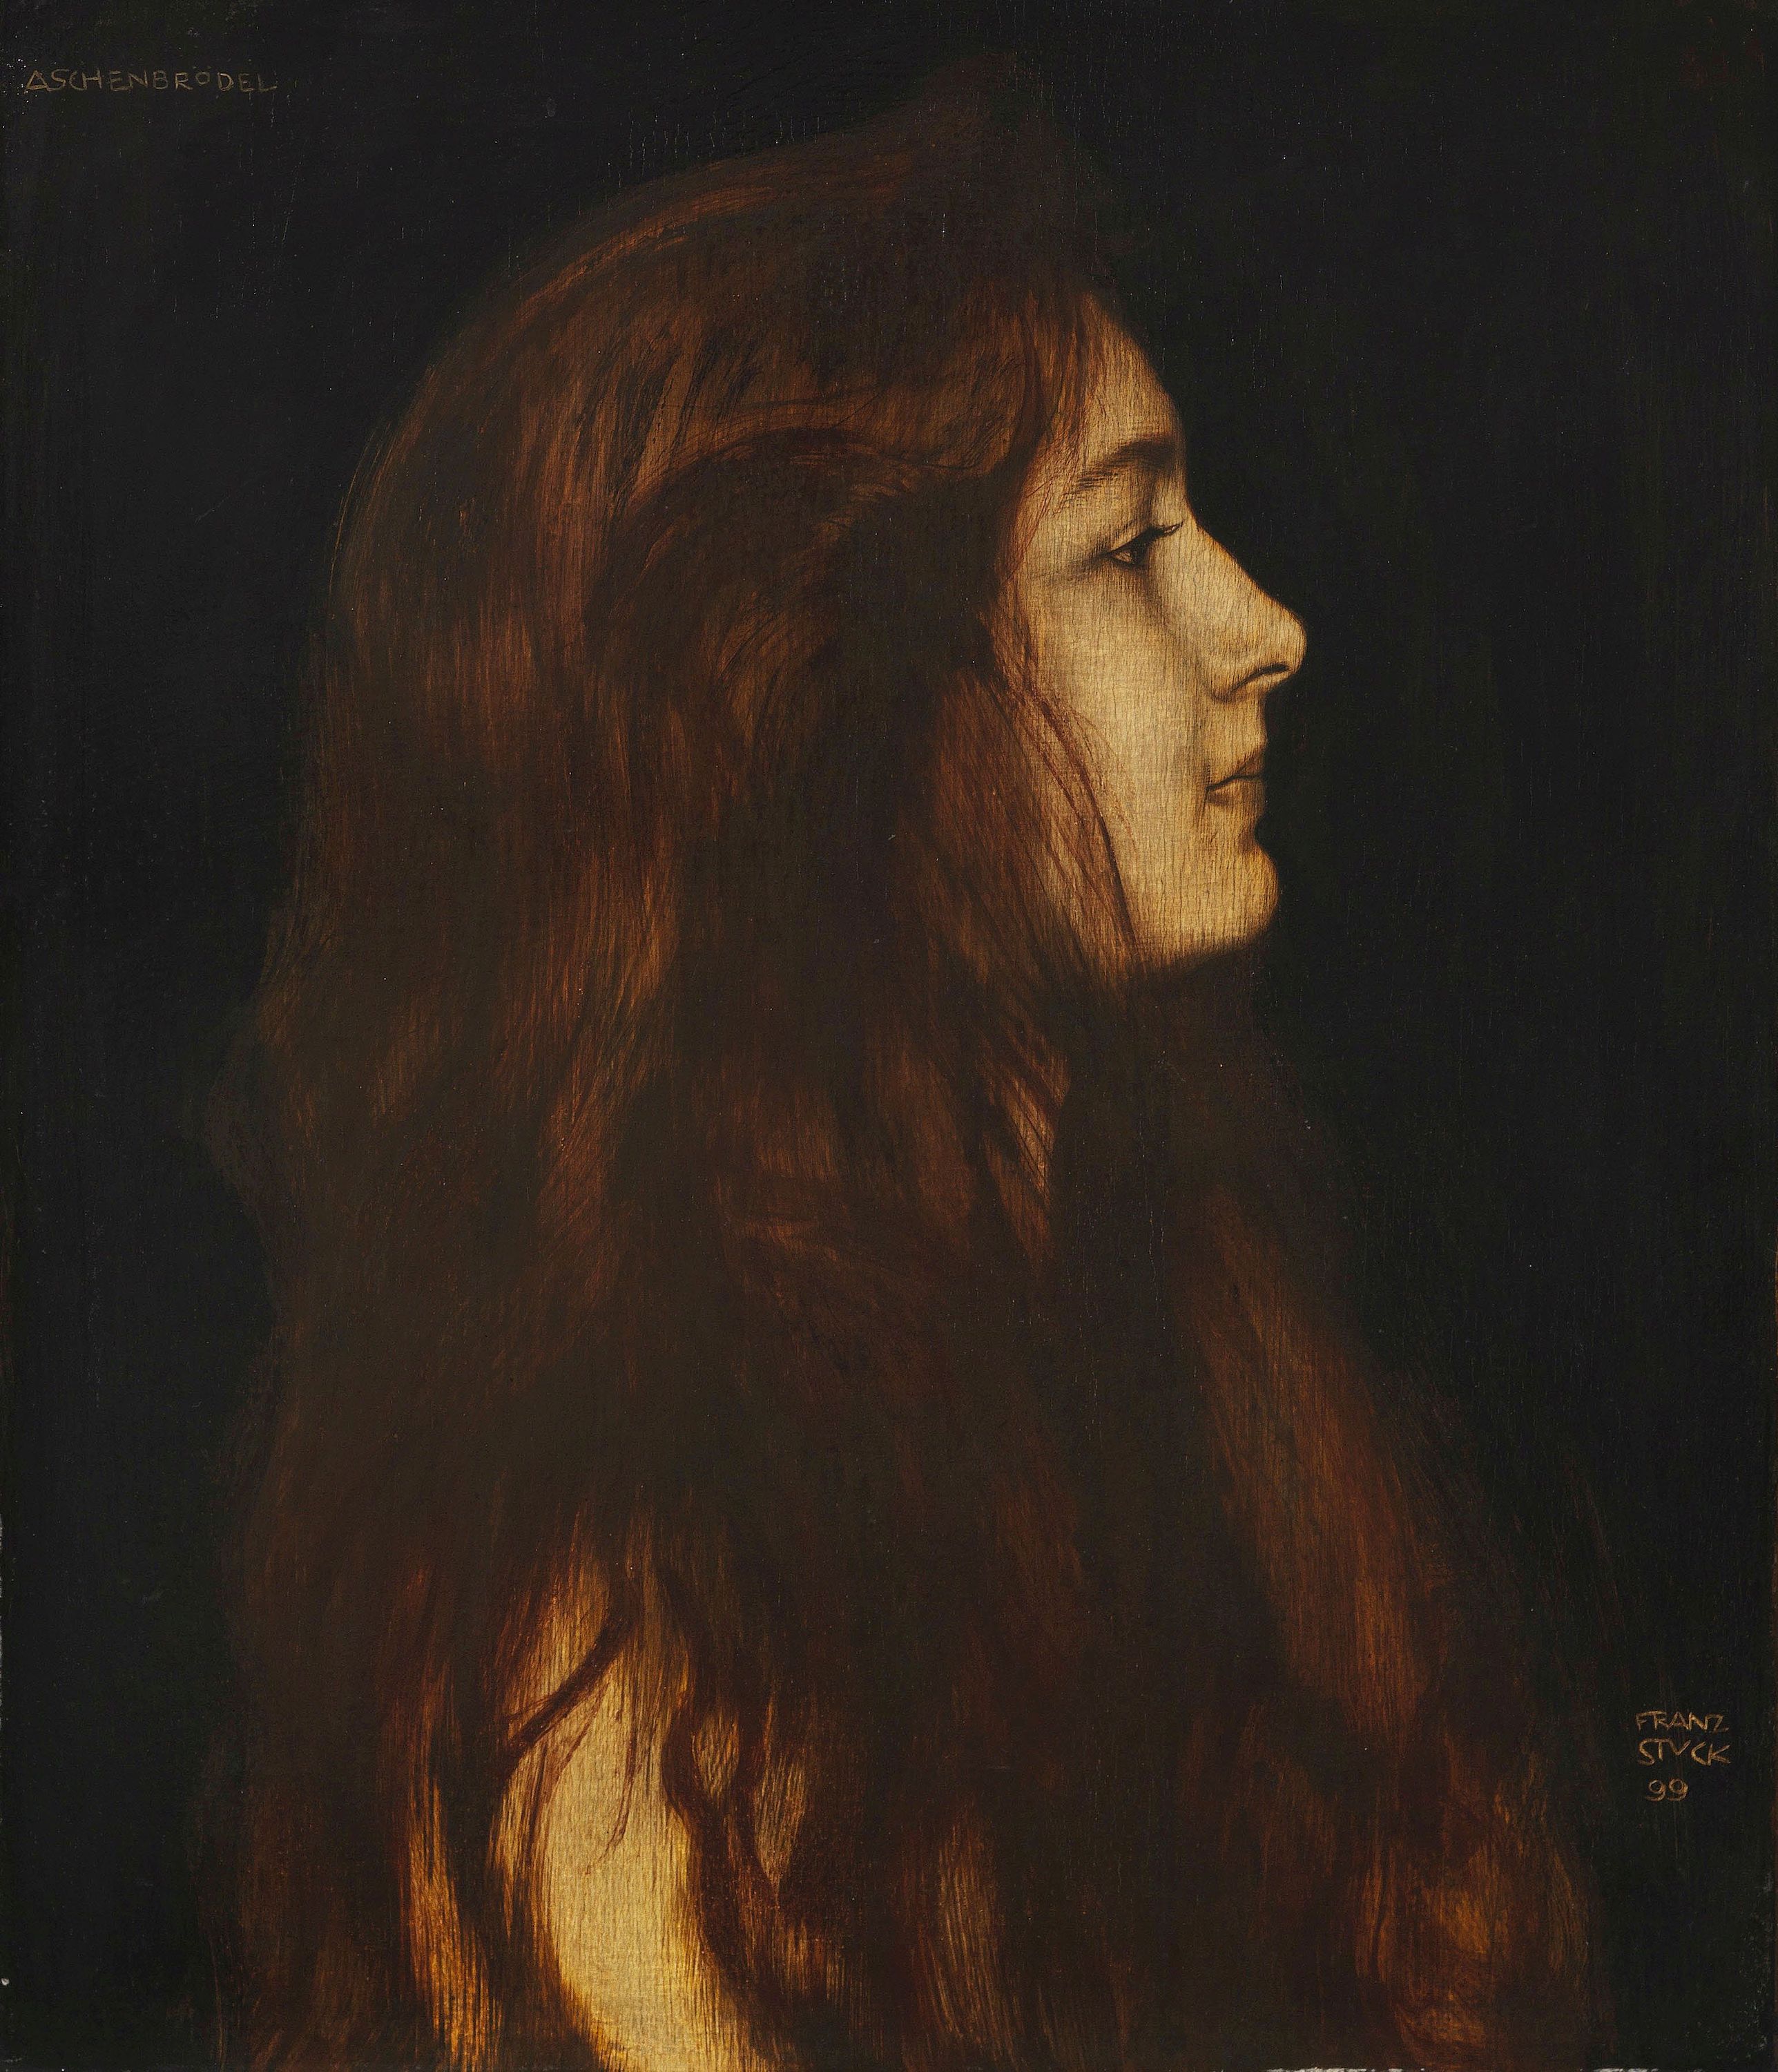 Σταχτοπούτα by Φραντς φον Στουκ - 1899 - 49,1 x 42,3 εκ. 